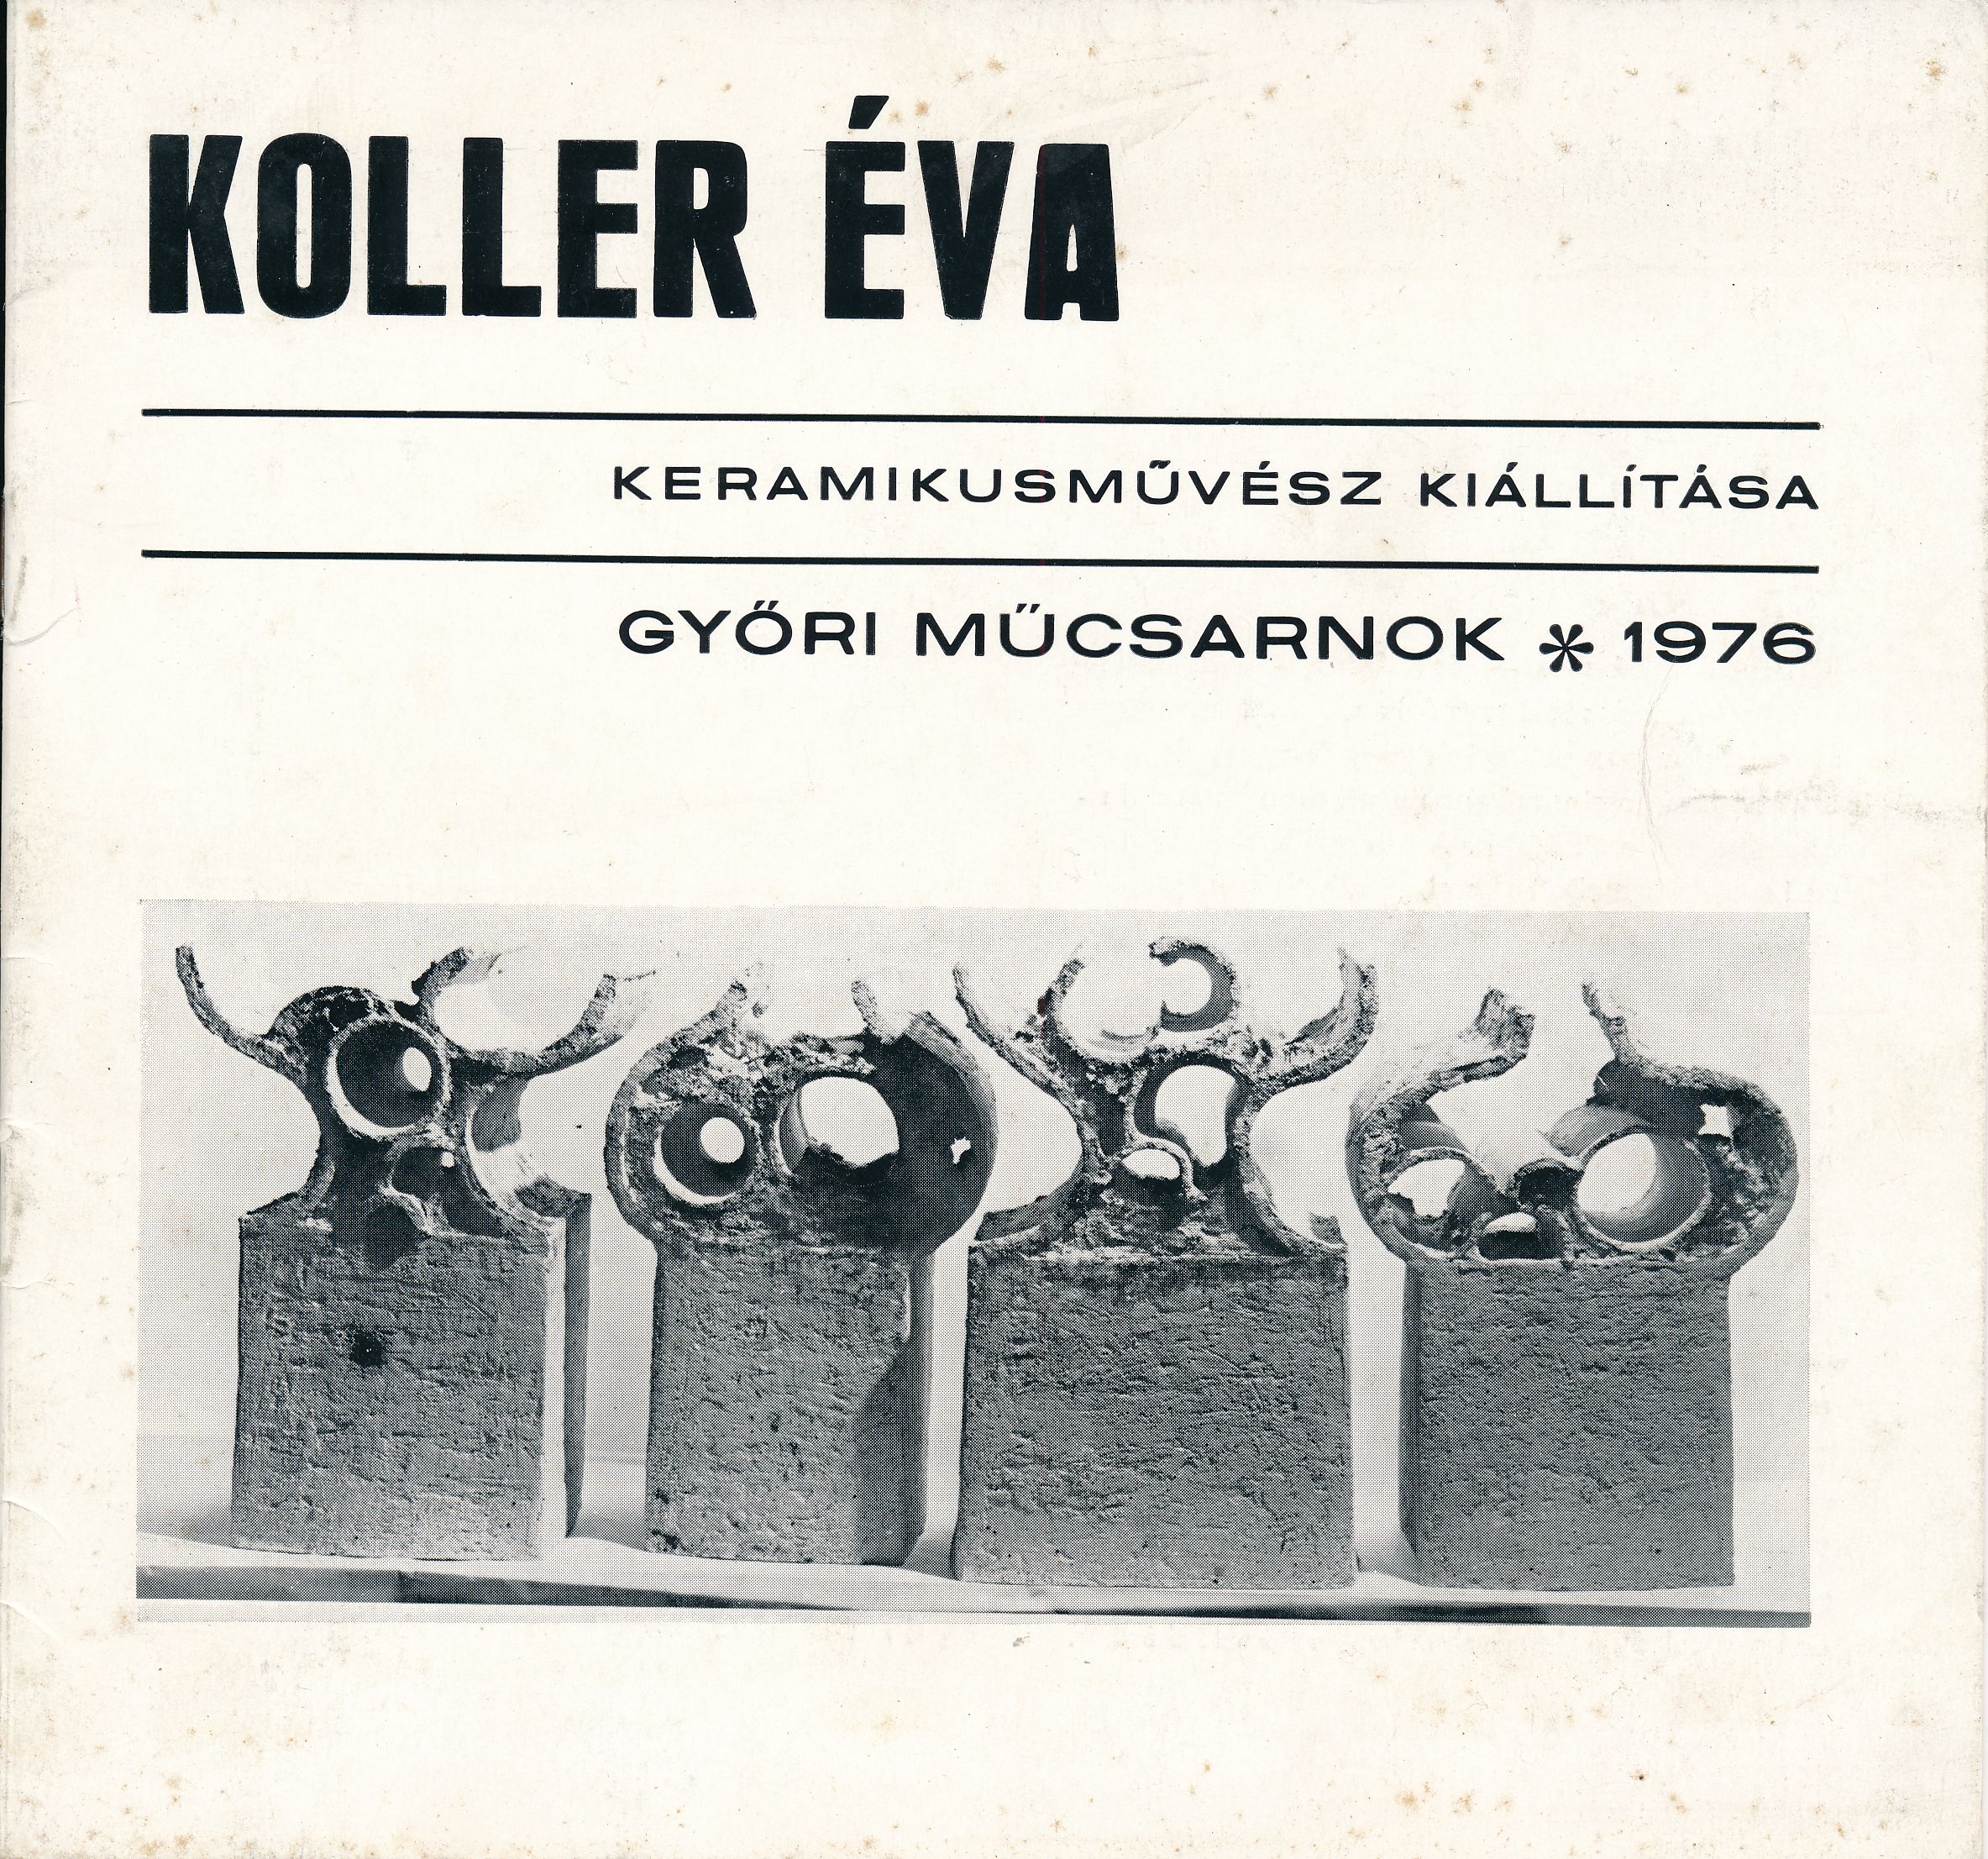 Koller Éva keramikusművész kiállítása (Design DigiTár – Iparművészeti archívum CC BY-NC-SA)